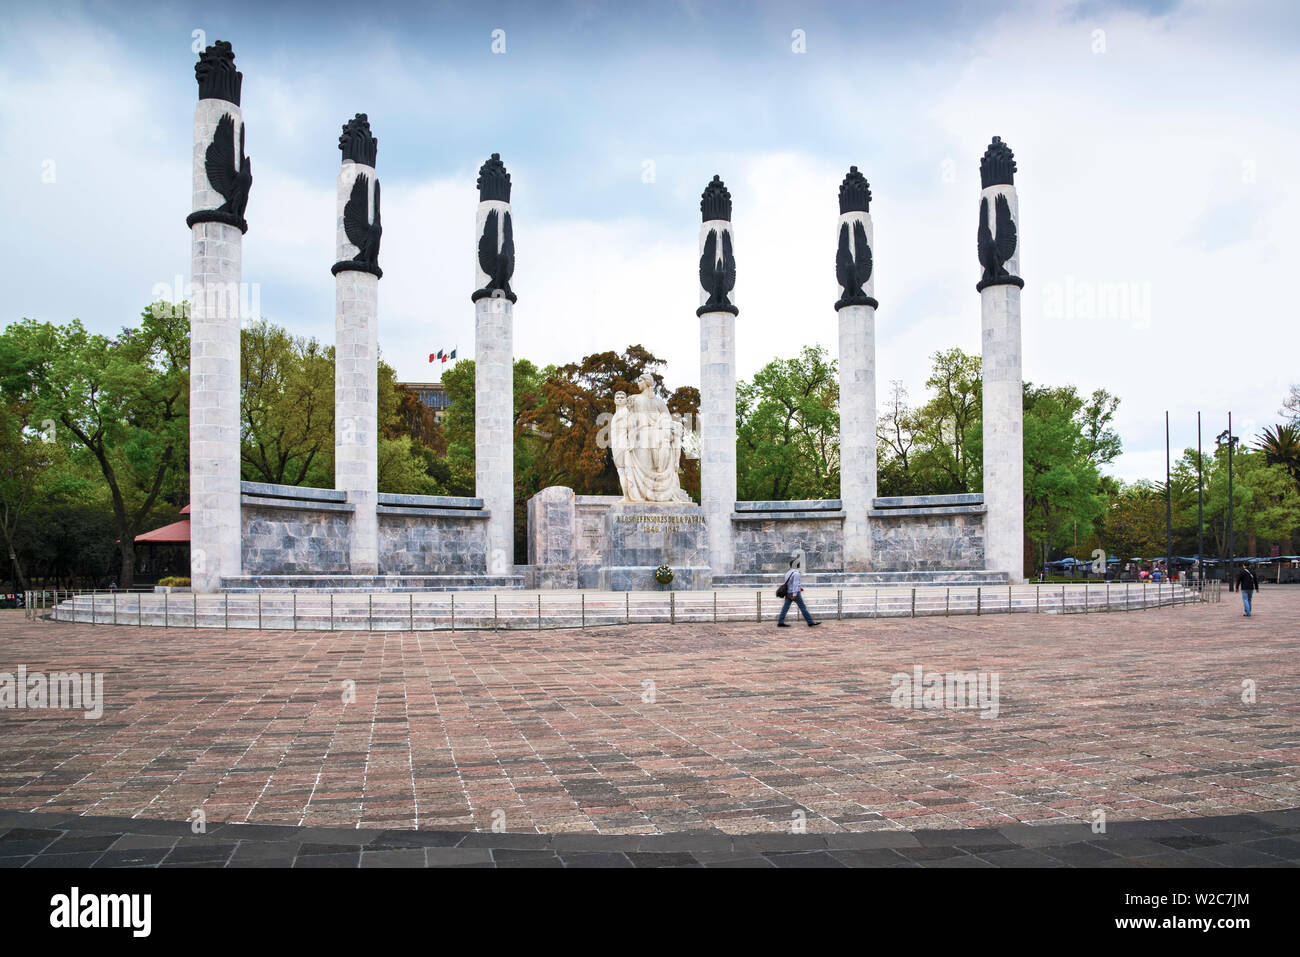 Mexique, Mexico City, Monument aux Niños Heroes, héroïques, les enfants d'un autel la Patria, dans la défense de la patrie, six jeunes cadets est mort en défendant le château de Chapultepec durant la guerre américano-mexicaine, l'entrée au château de Chapultepec Banque D'Images